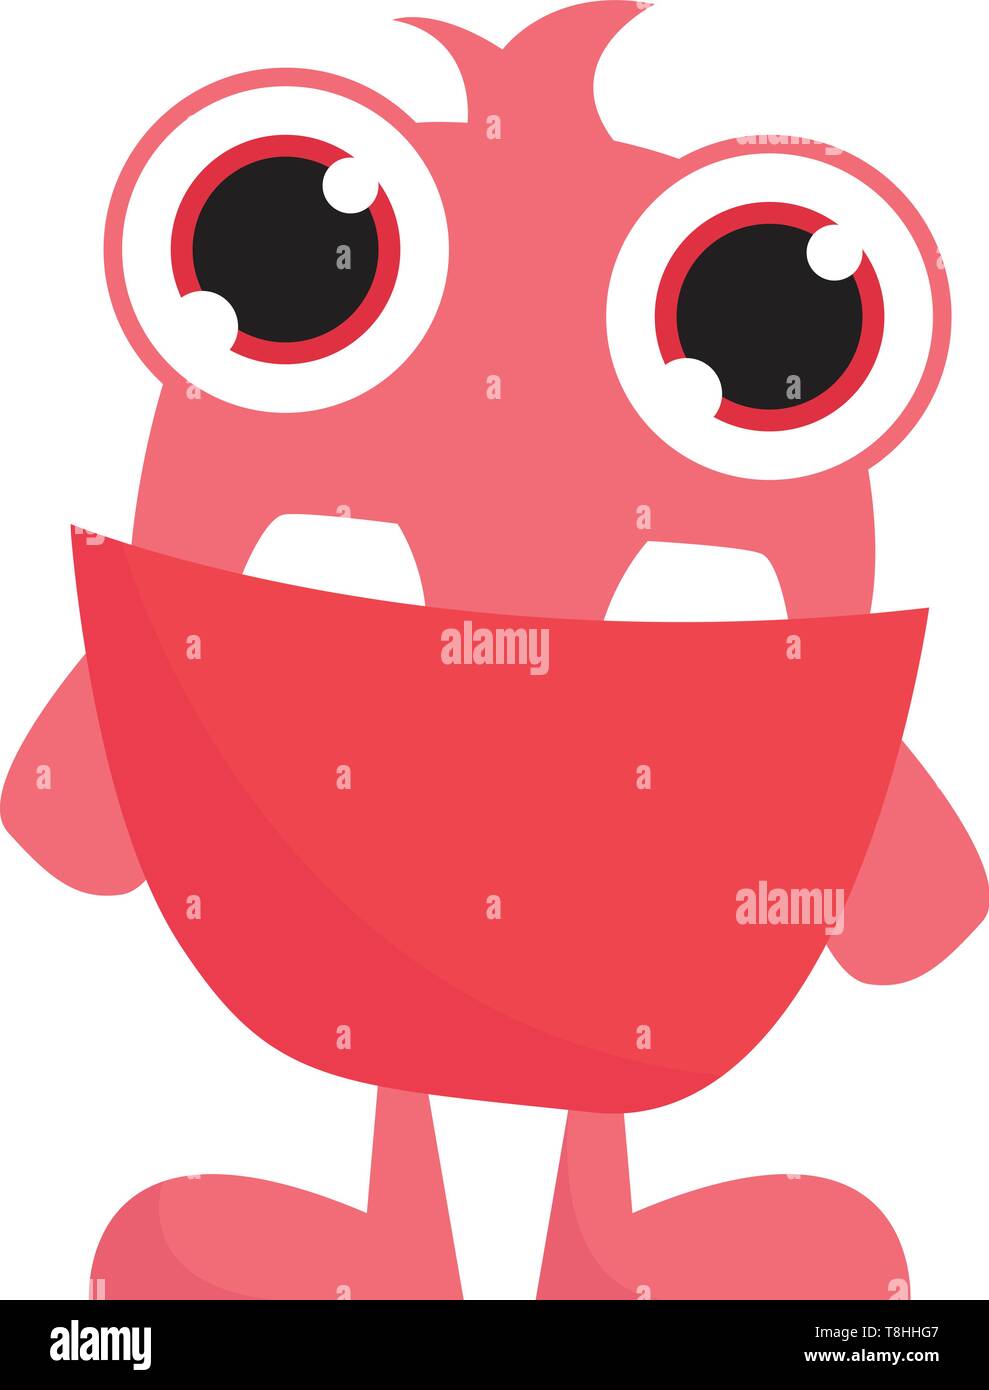 Un grazioso piccolo mostro rosa con occhi grandi e due grandi denti davanti, il vettore, il colore di disegno o illustrazione. Illustrazione Vettoriale